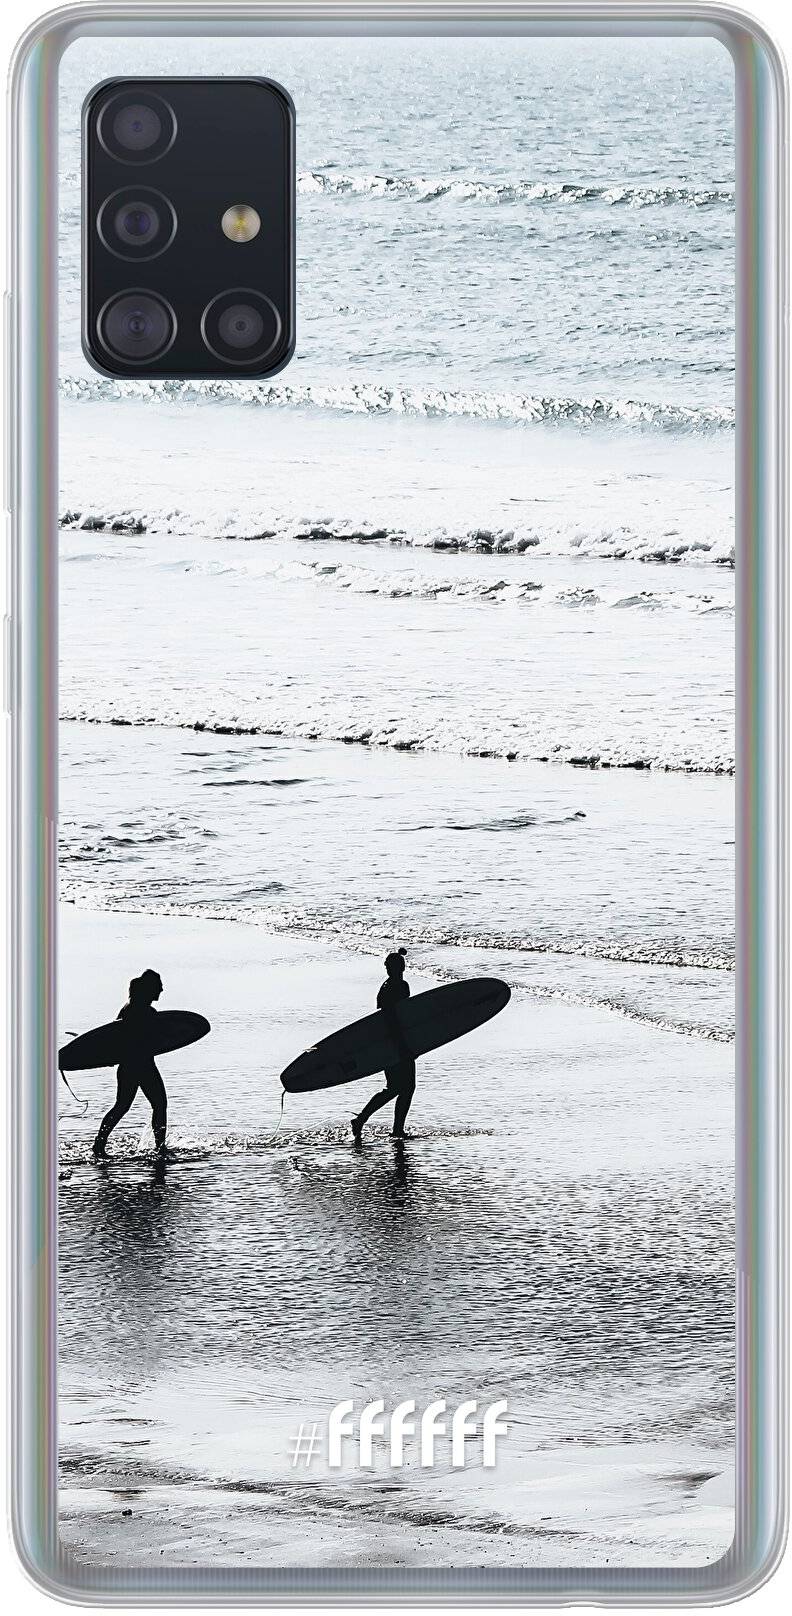 Surfing Galaxy A51